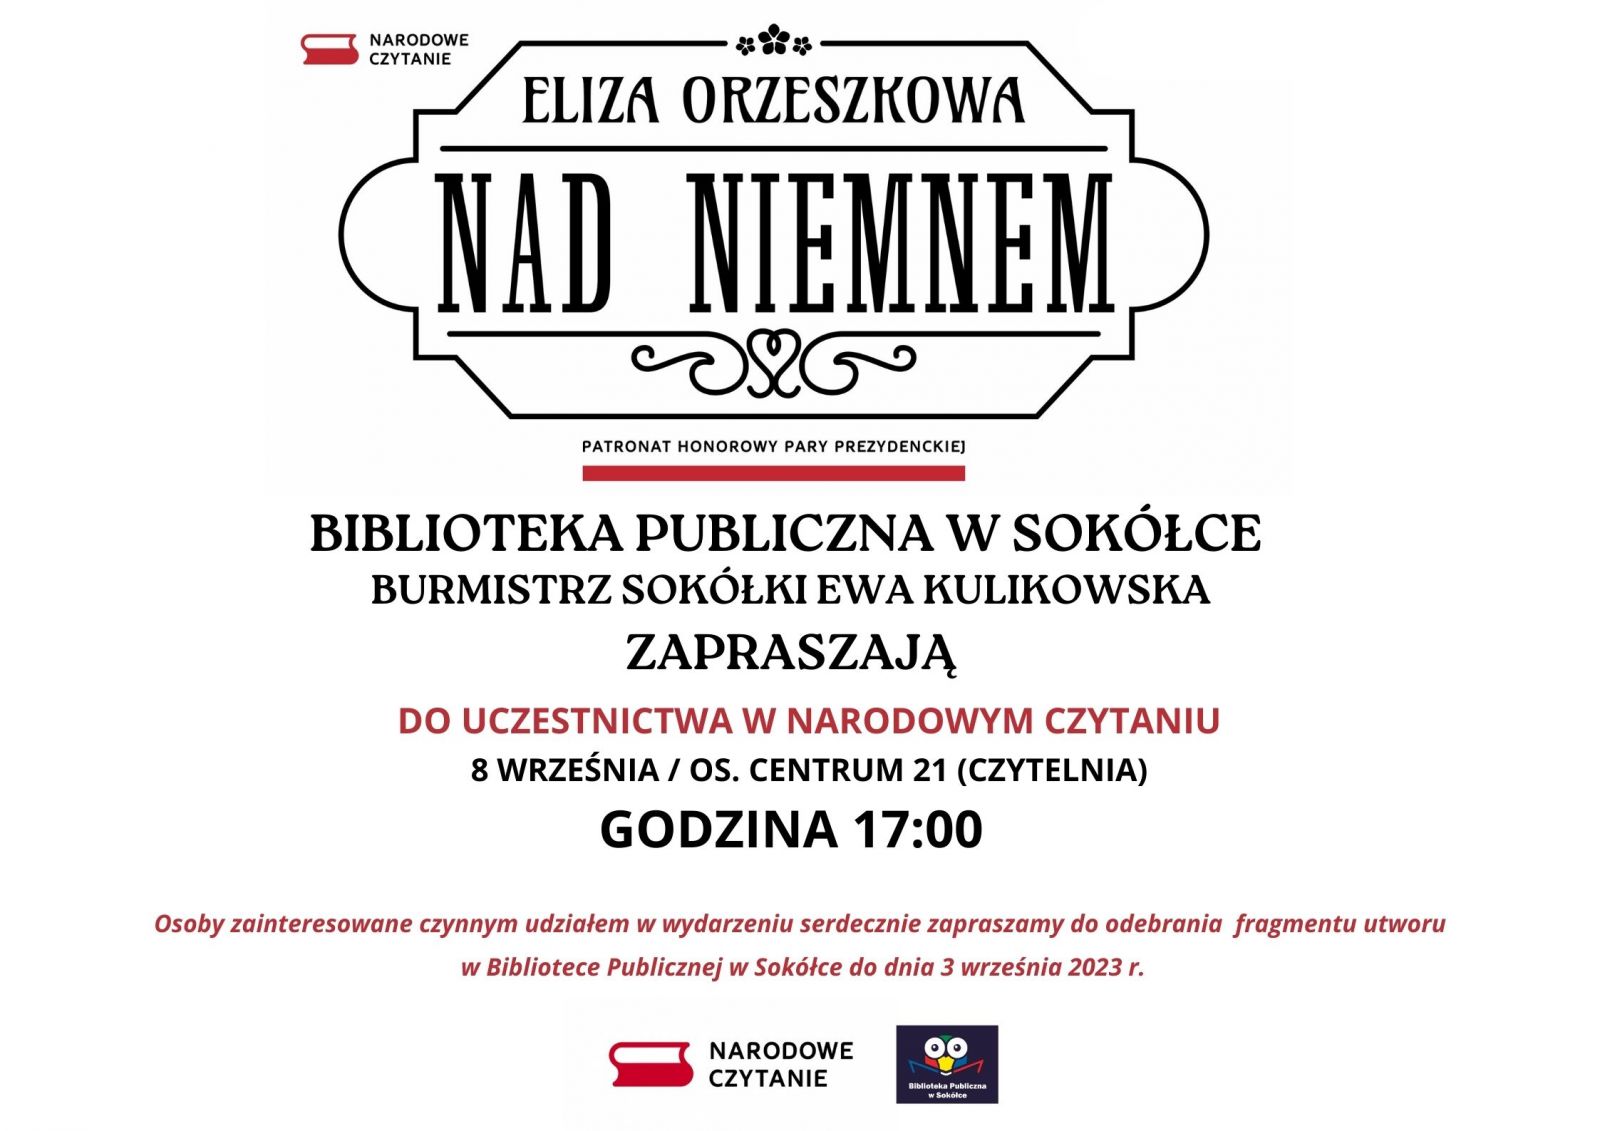 Plakat promujący Narodowe Czytanie w Bibliotece Publicznej w Sokółkce